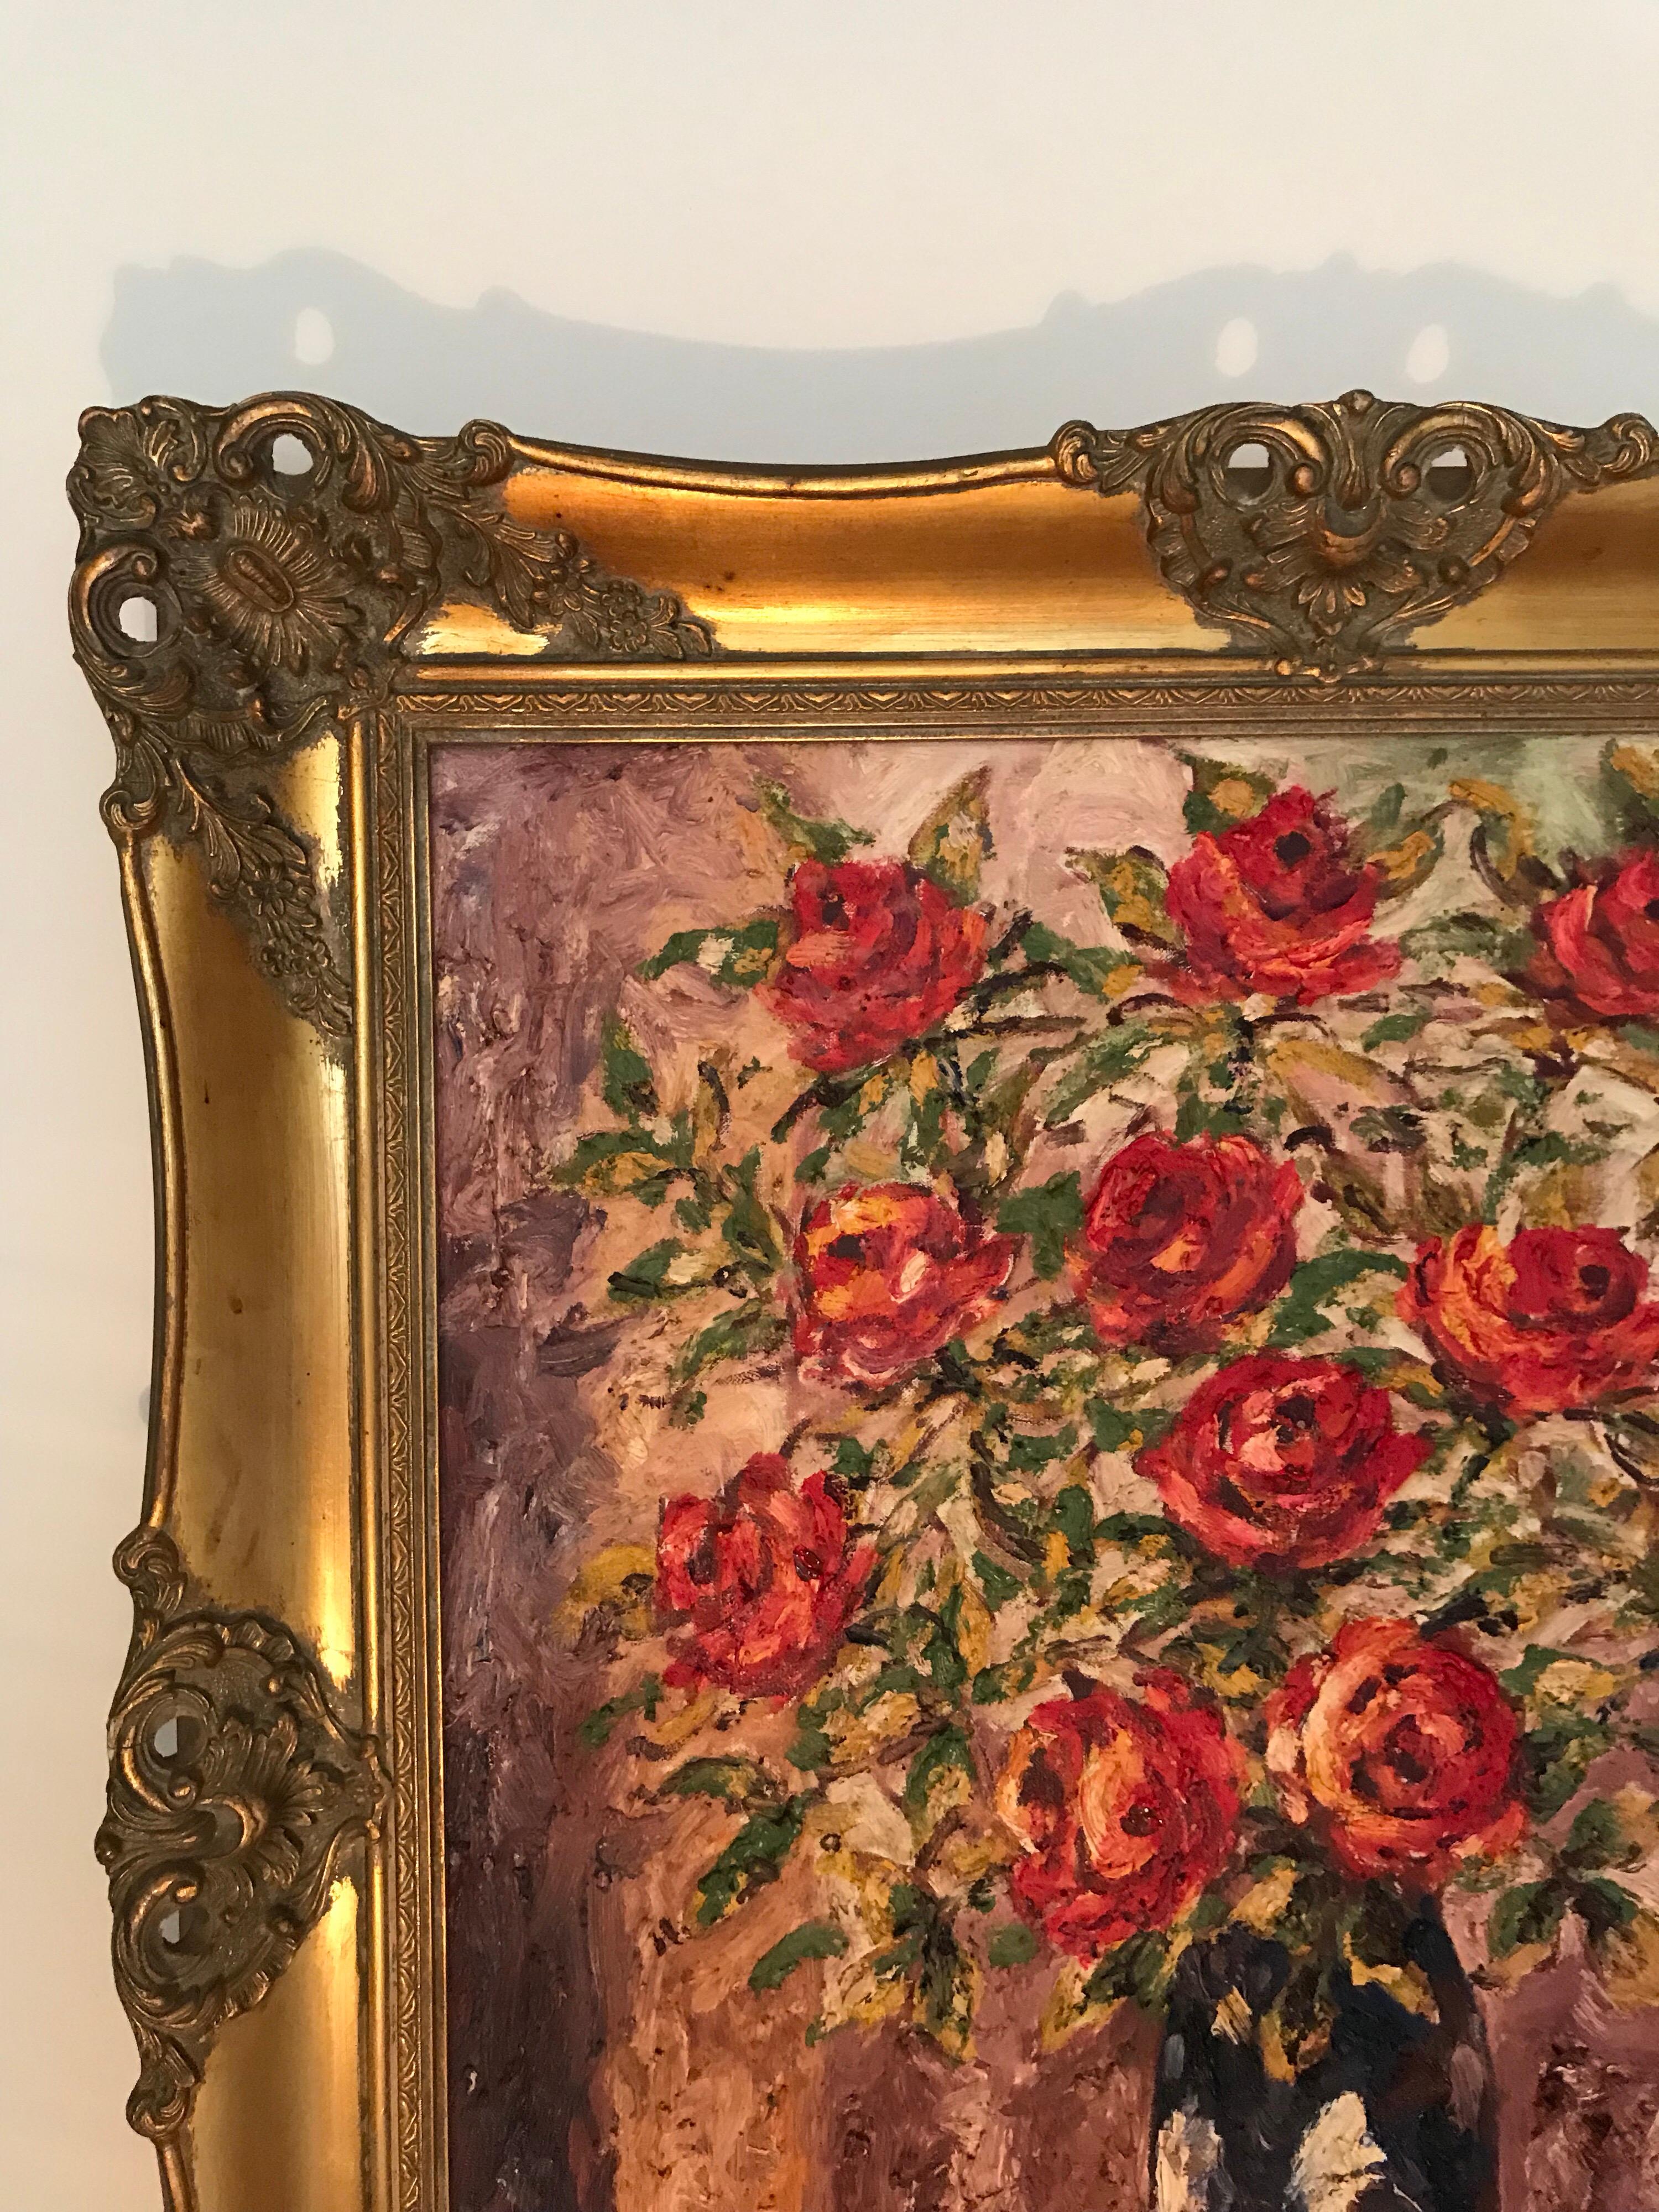 Hübsches antikes Ölgemälde auf Leinwand im figurativen Stil des dänischen Künstlers Braabye.
Dieses sehr mutige Gemälde zeigt eine Vase mit roten Rosen auf einem Tisch.
Die Farben sind immer noch leuchtend, dick und grob.
Dieses Gemälde ist in einen